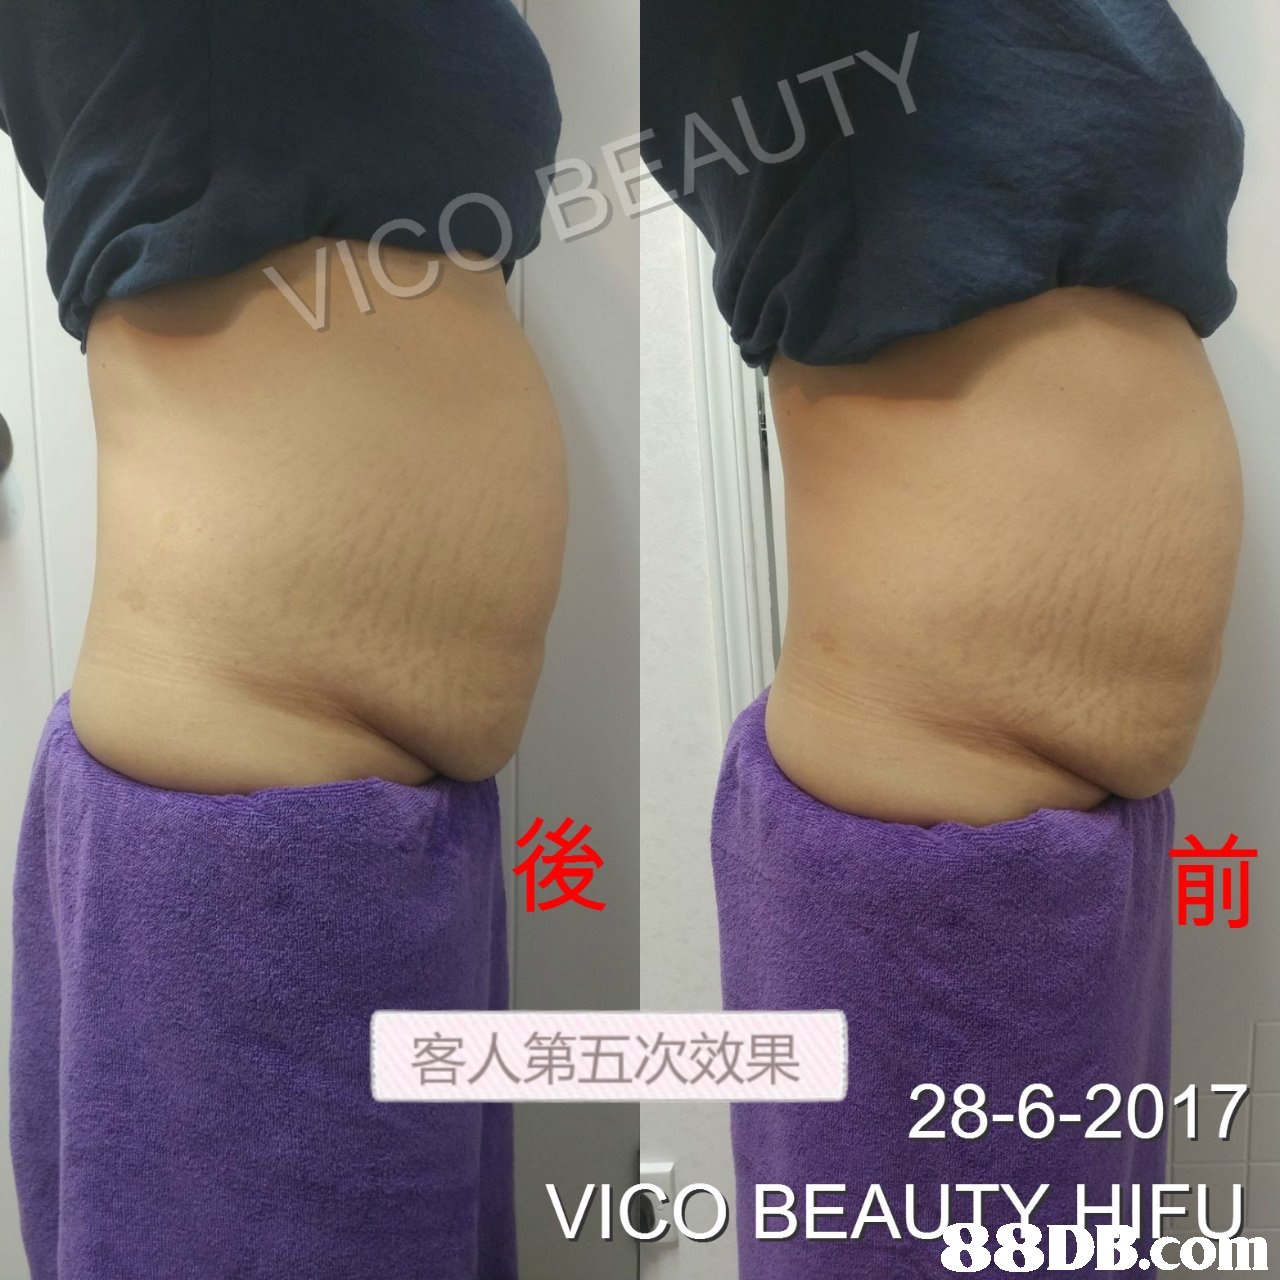 後 客人第五次效果 28-6-2017 VICO BEA  abdomen,purple,joint,shoulder,thigh